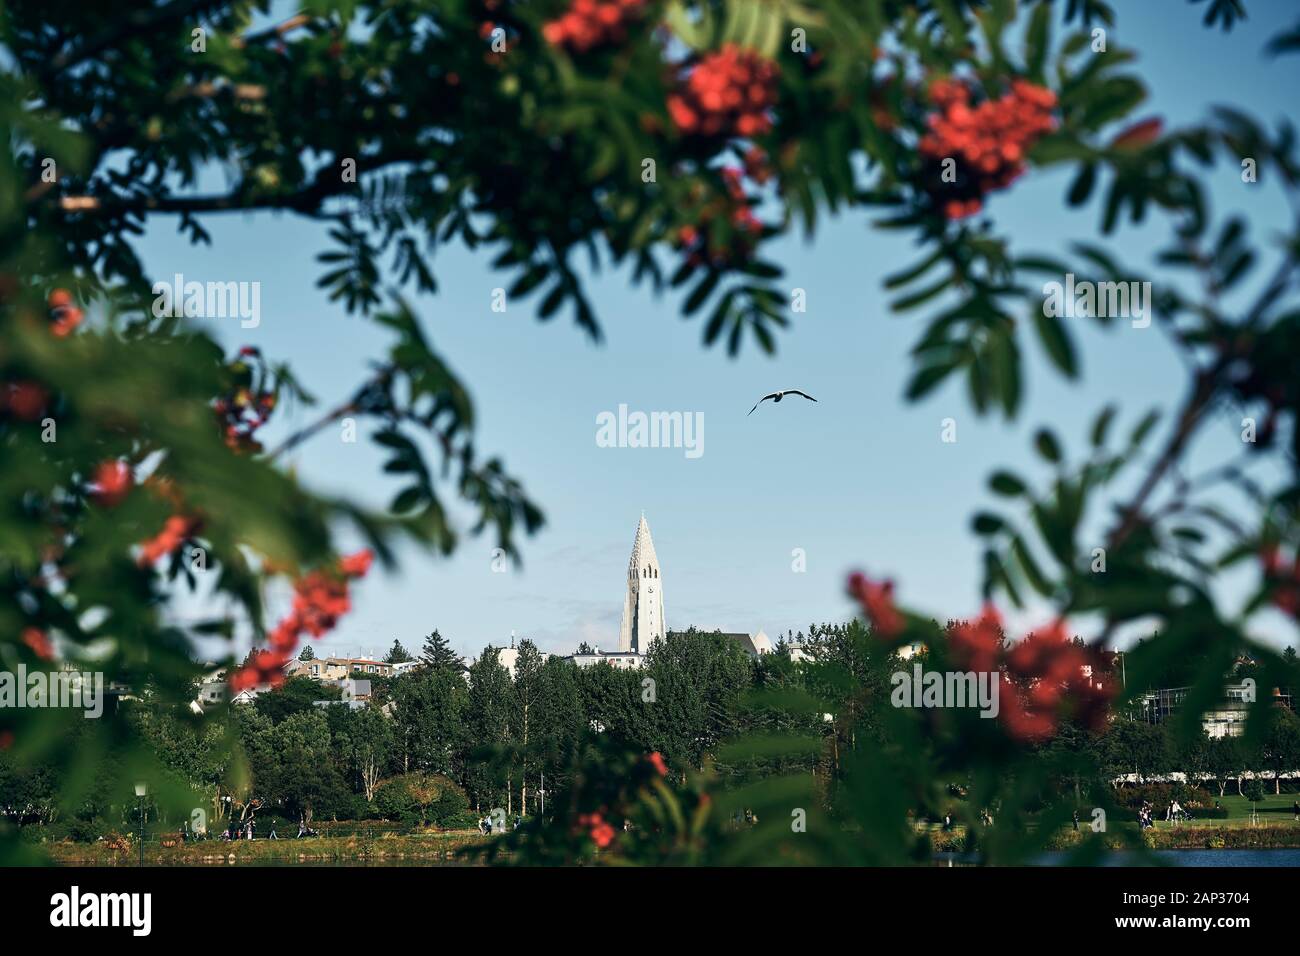 Malerischer Blick auf den Weißen Turm und Landschaft durch Zweige der vogelbeere Baum im Sommer Stockfoto